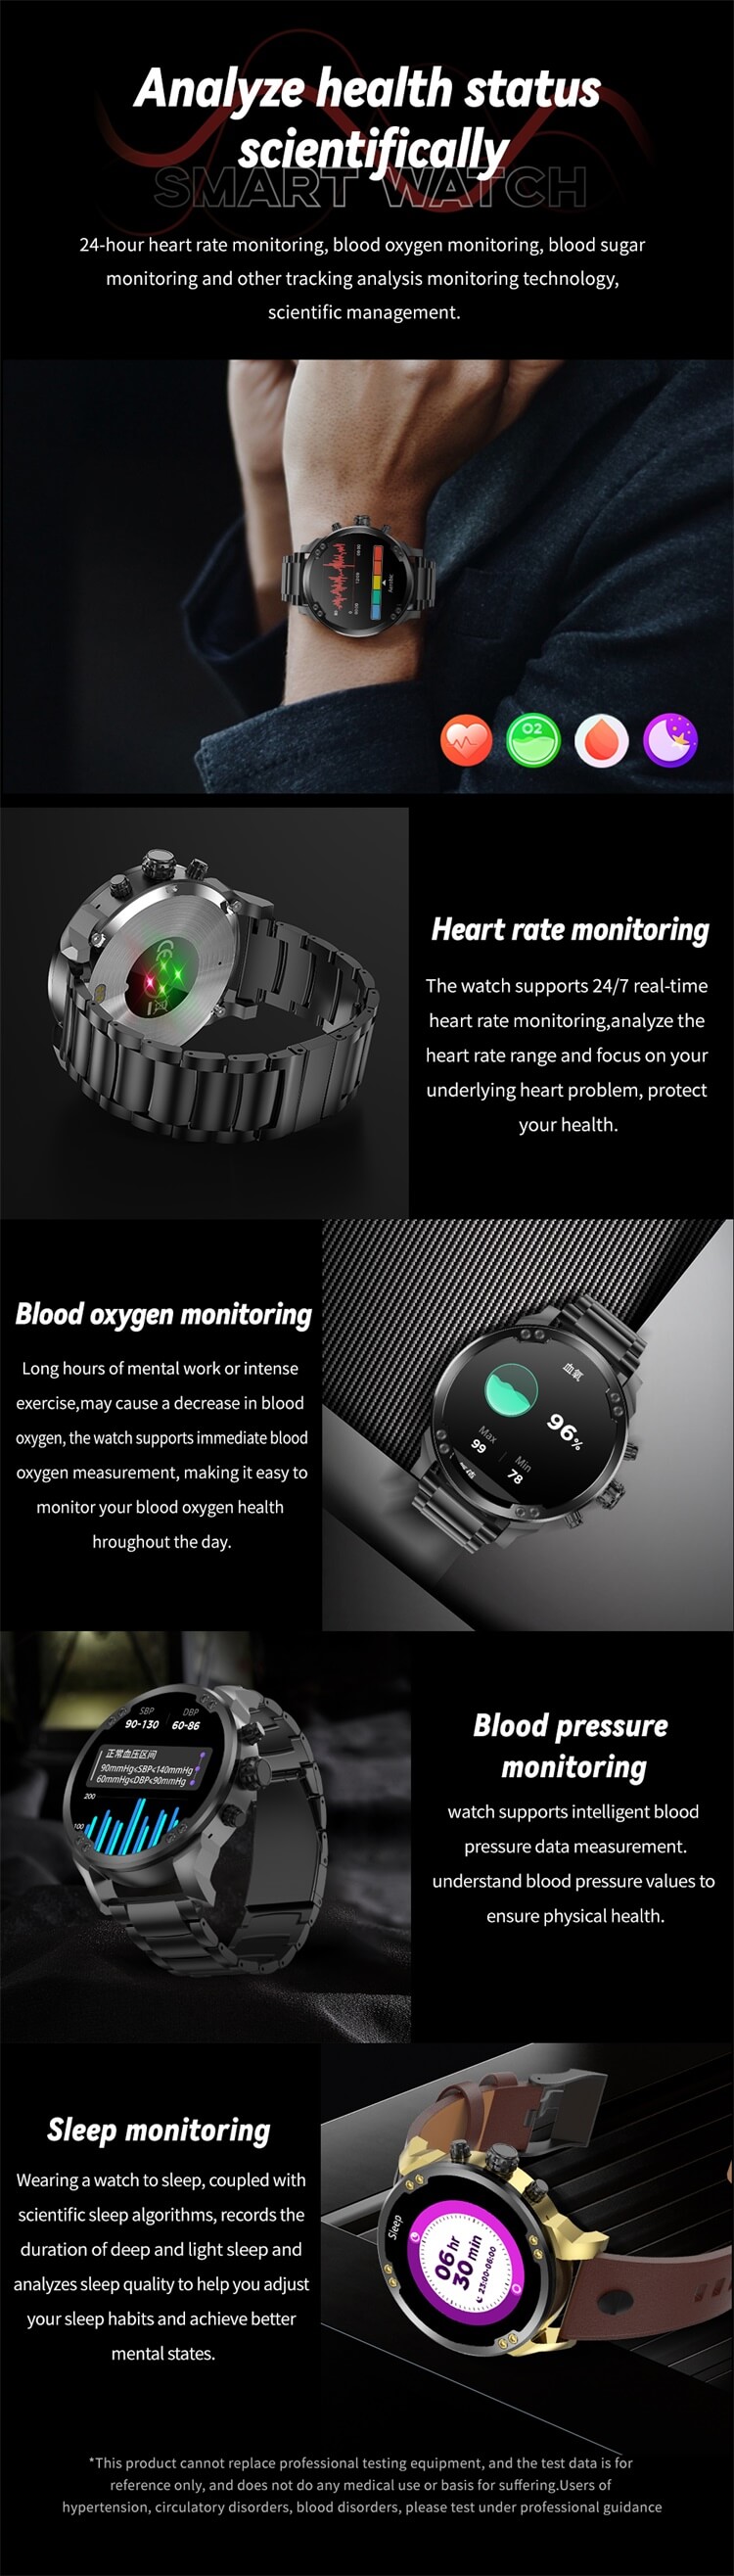 VS53 Smartwatch, modisches Erscheinungsbild, hochauflösender Bildschirm, starke Batteriekapazität – Shenzhen Shengye Technology Co., Ltd